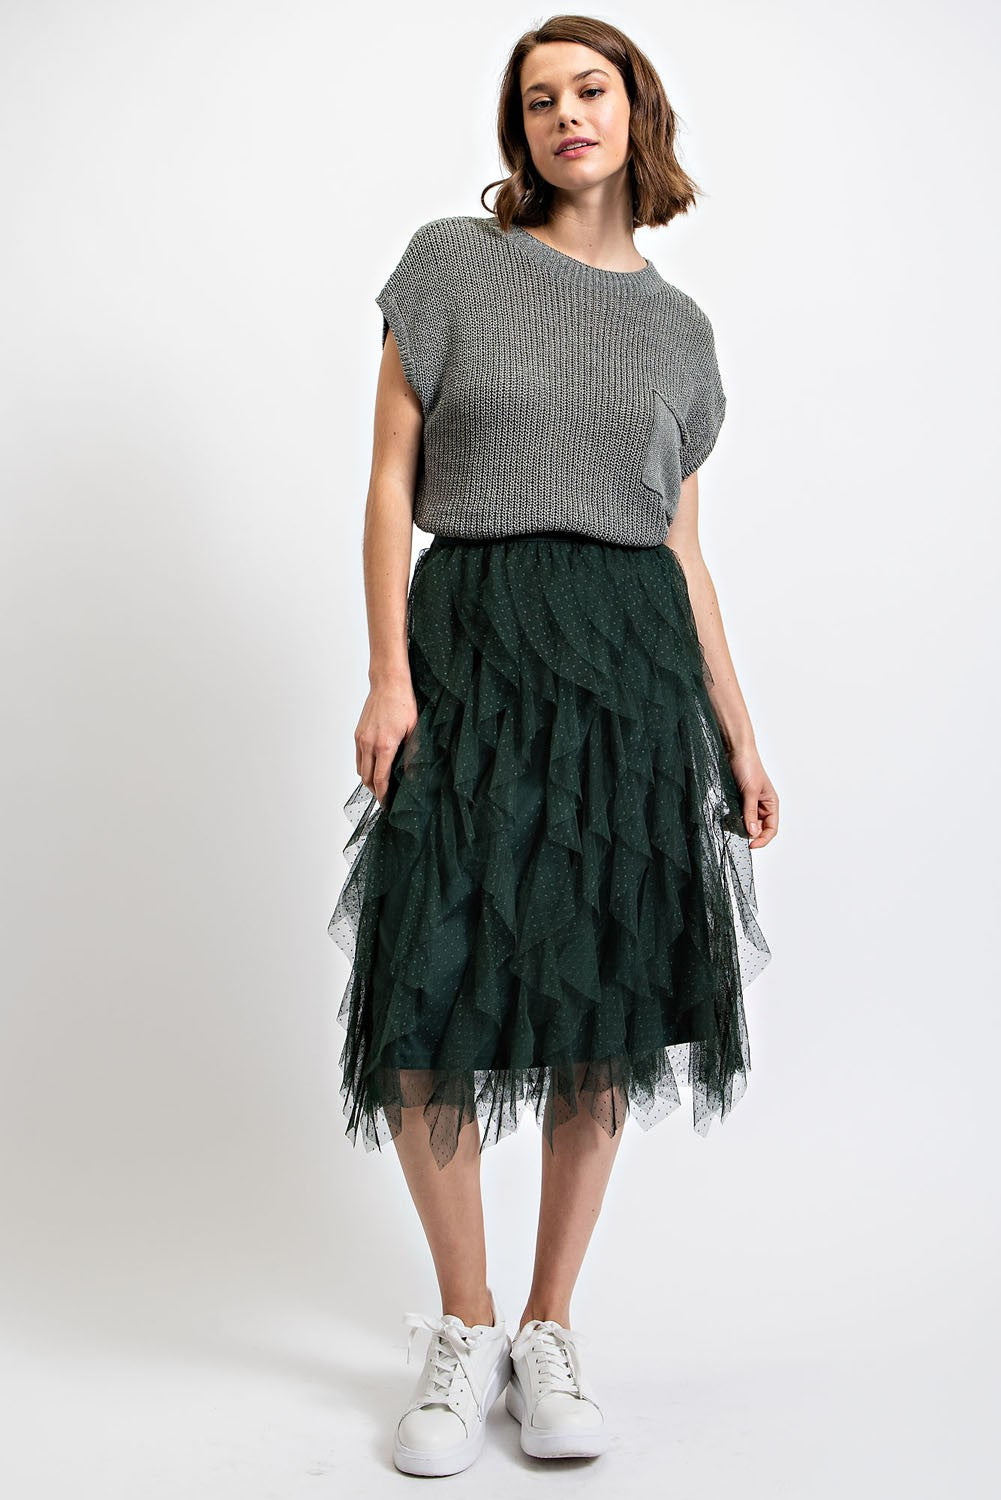 GiGio Ruffled Tulle Elastic Waist Midi Skirt